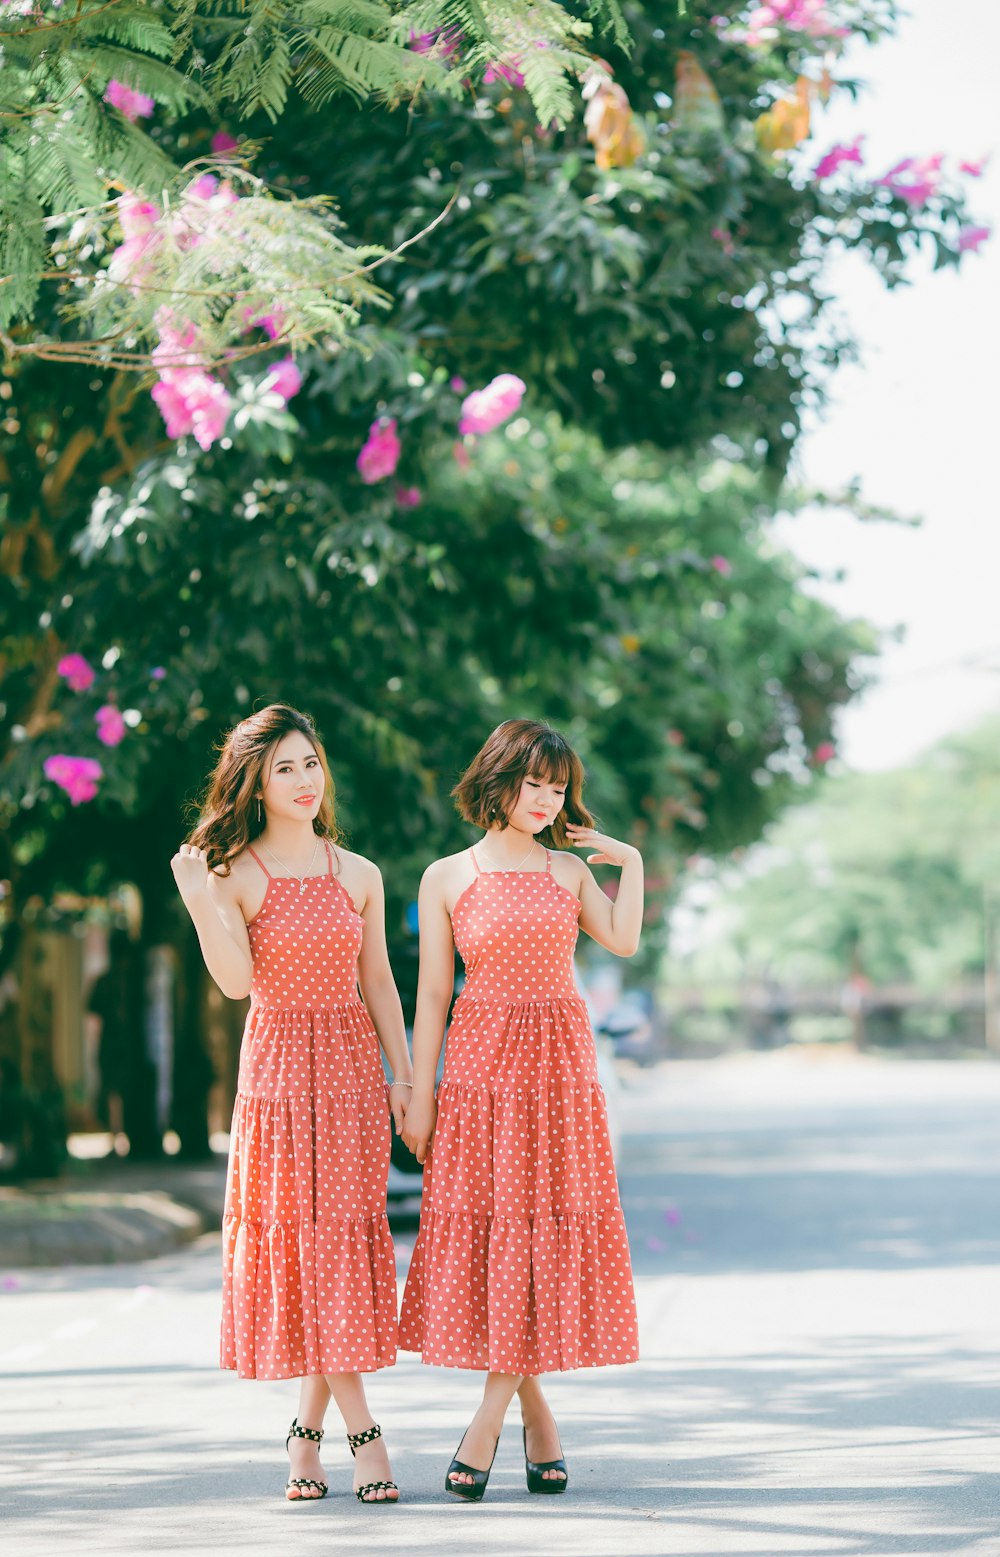 빨간색과 흰색의 물방울 무늬 드레스를 입은 두 여성이 낮에 분홍색 꽃잎이 달린 꽃 근처 도로에 서 있습니다